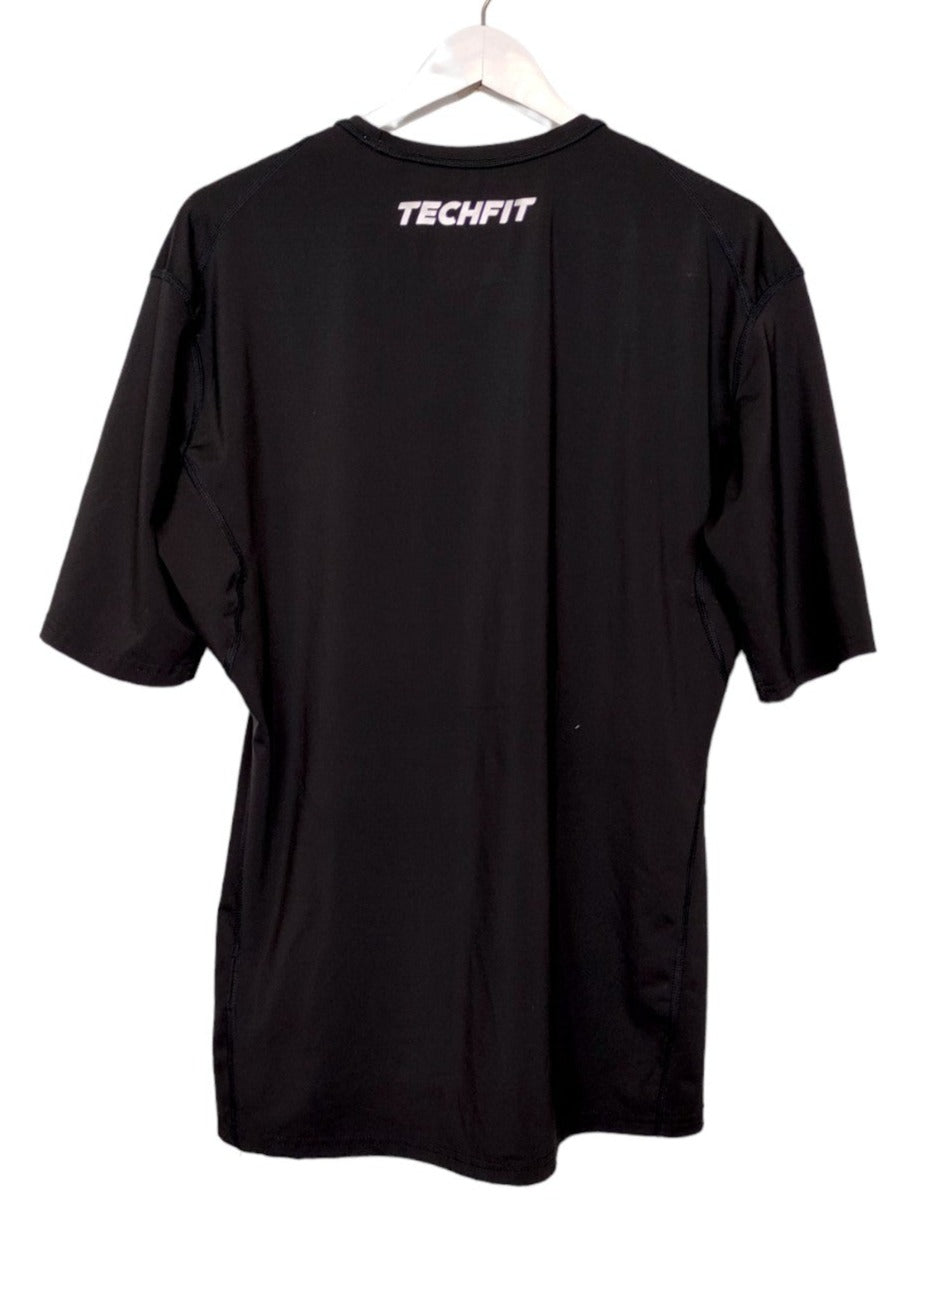 Εφαρμοστή. Αθλητική Ανδρική Μπλούζα - T-Shirt ADIDAS Techfit Compression σε Μαύρο χρώμα (L/XL)